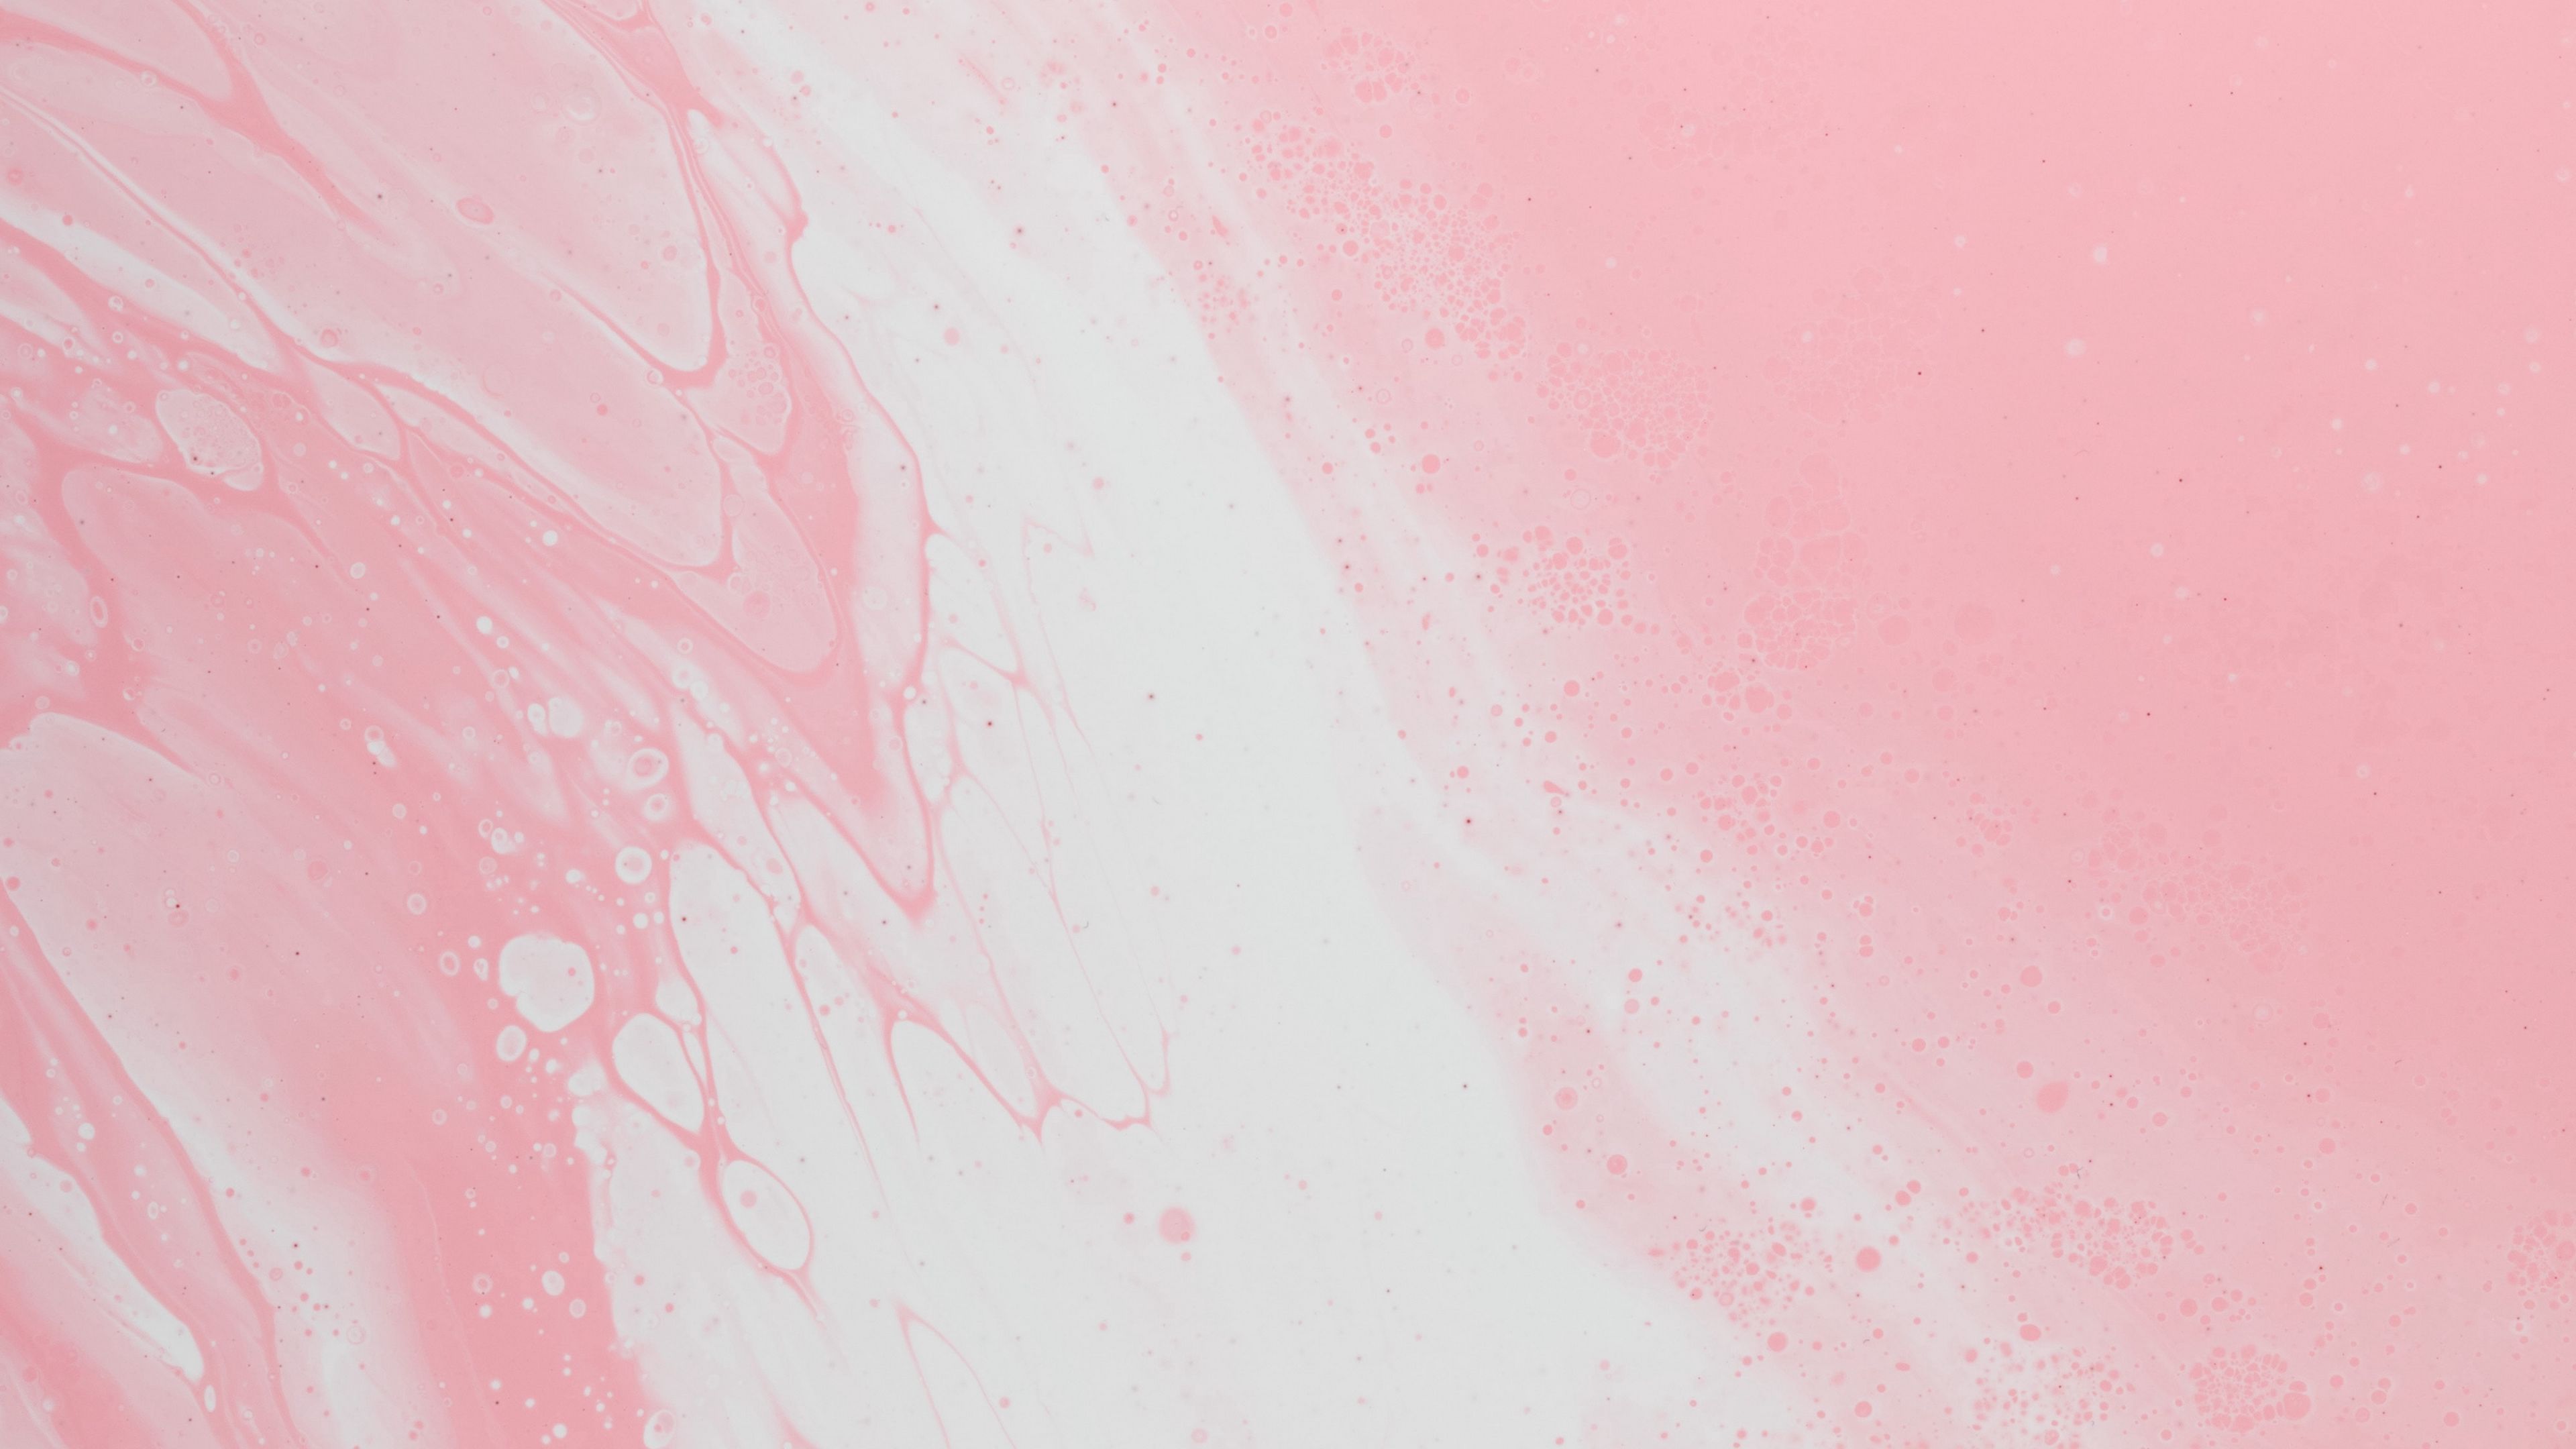 Hình nền bề mặt màu hồng với vết bẩn và chất lỏng cho desktop là sự kết hợp đầy màu sắc, táo bạo và đầy cá tính. Với màu hồng tươi sáng và những vết bẩn cùng chất lỏng đánh dấu sự khác biệt, hình nền sẽ khiến cho desktop của bạn trở nên phong cách và độc đáo hơn. Bạn sẽ được trải nghiệm một cảm giác độc lập và thú vị khi sử dụng hình nền này.